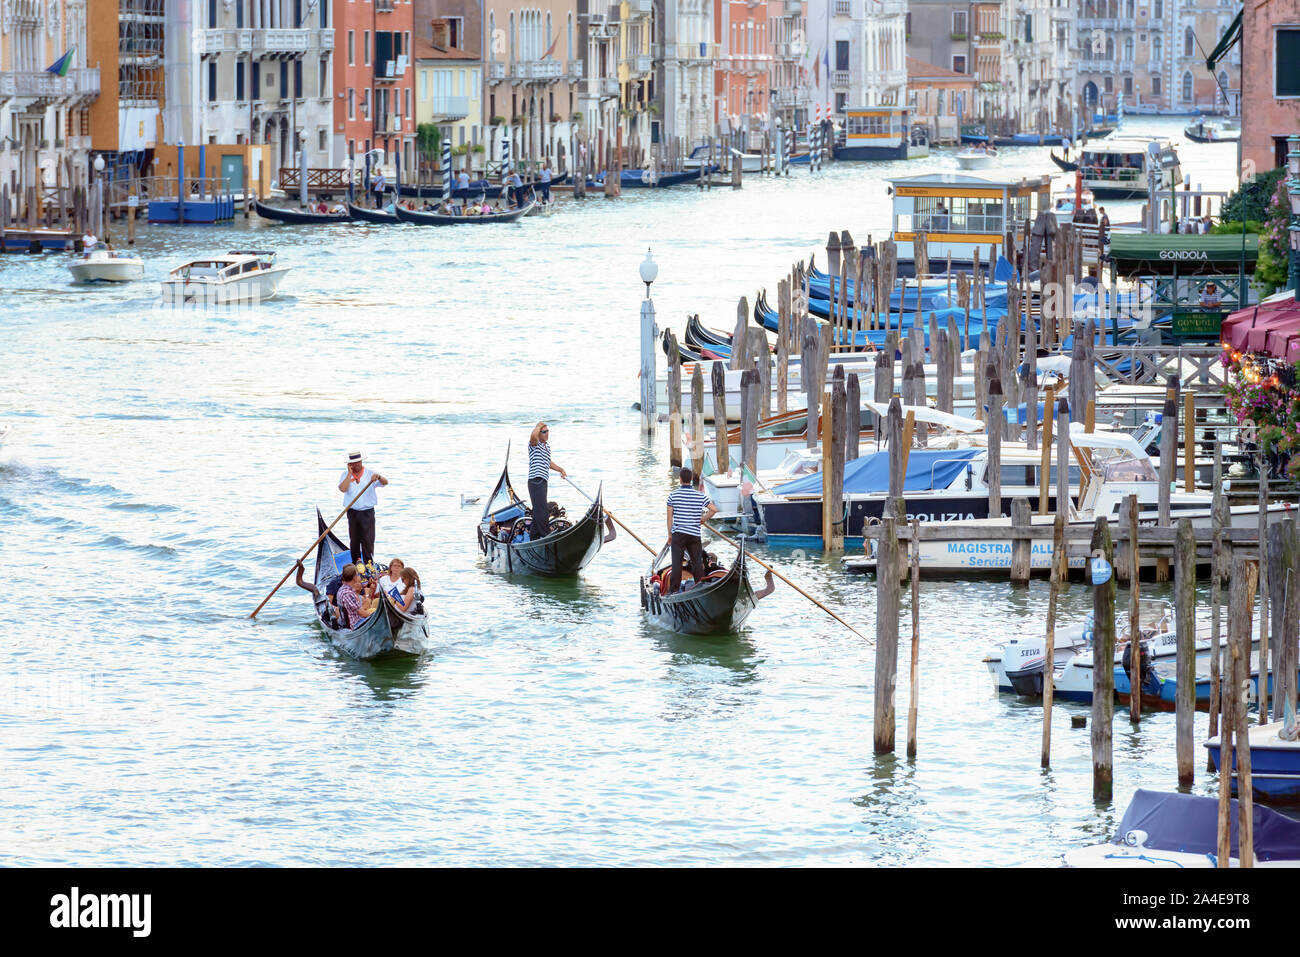 Venedig, Italien - 7. August 2014: Gondeln und Boote auf venezianischen Canale Grande Stockfoto